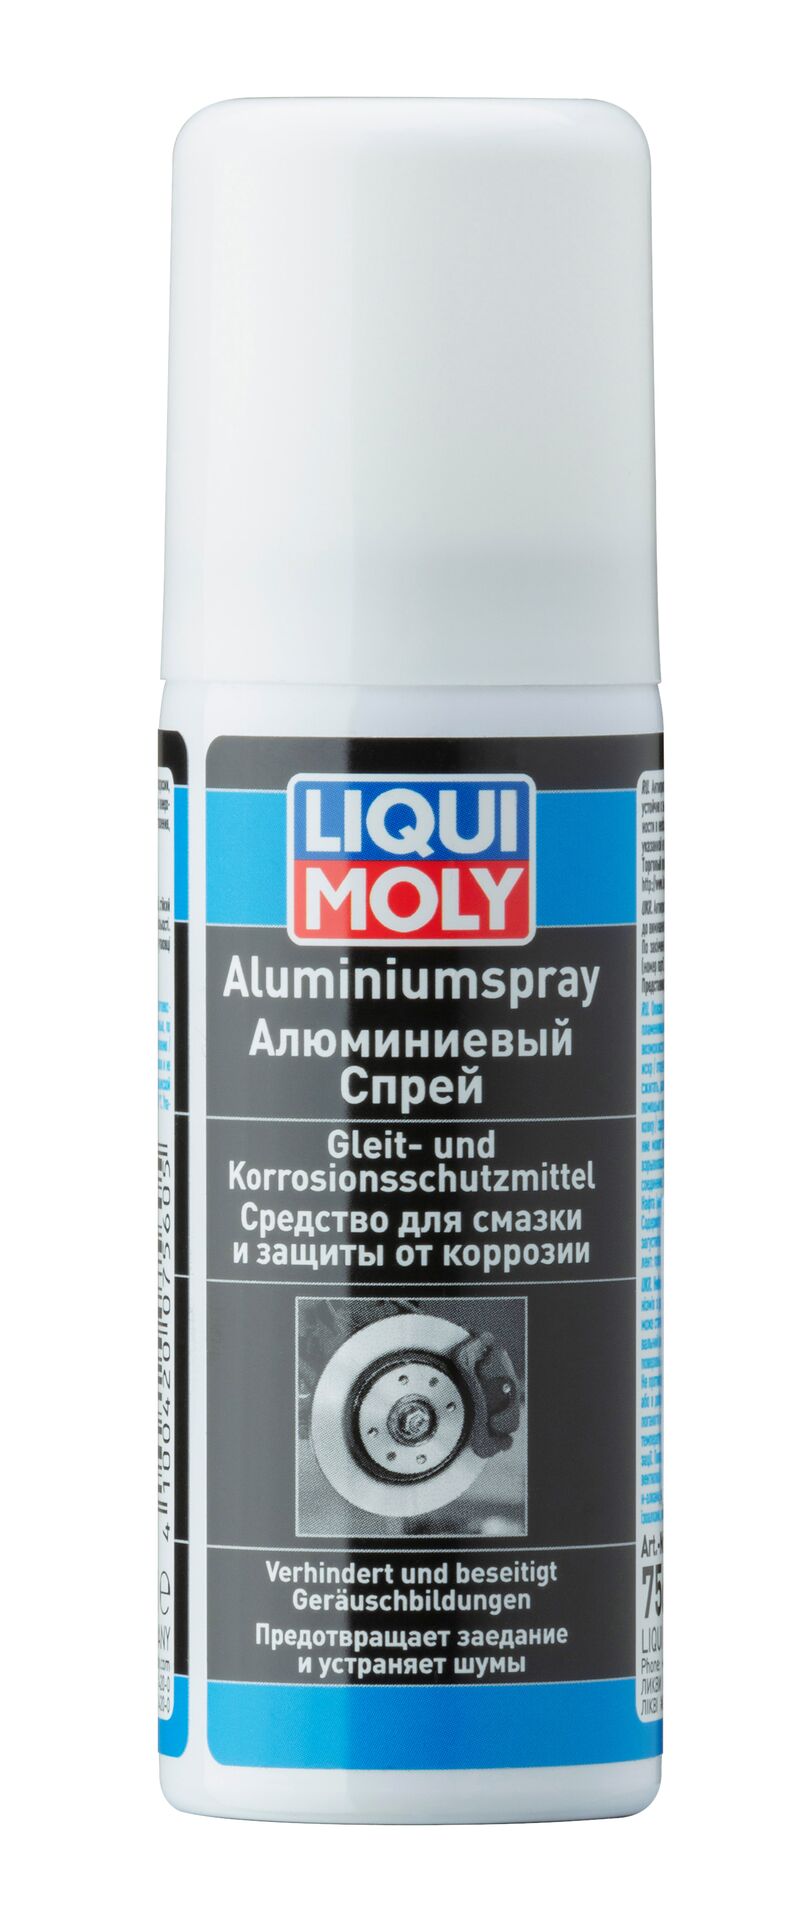 Алюминиевый спрей Liqui Moly Aluminium-Spray